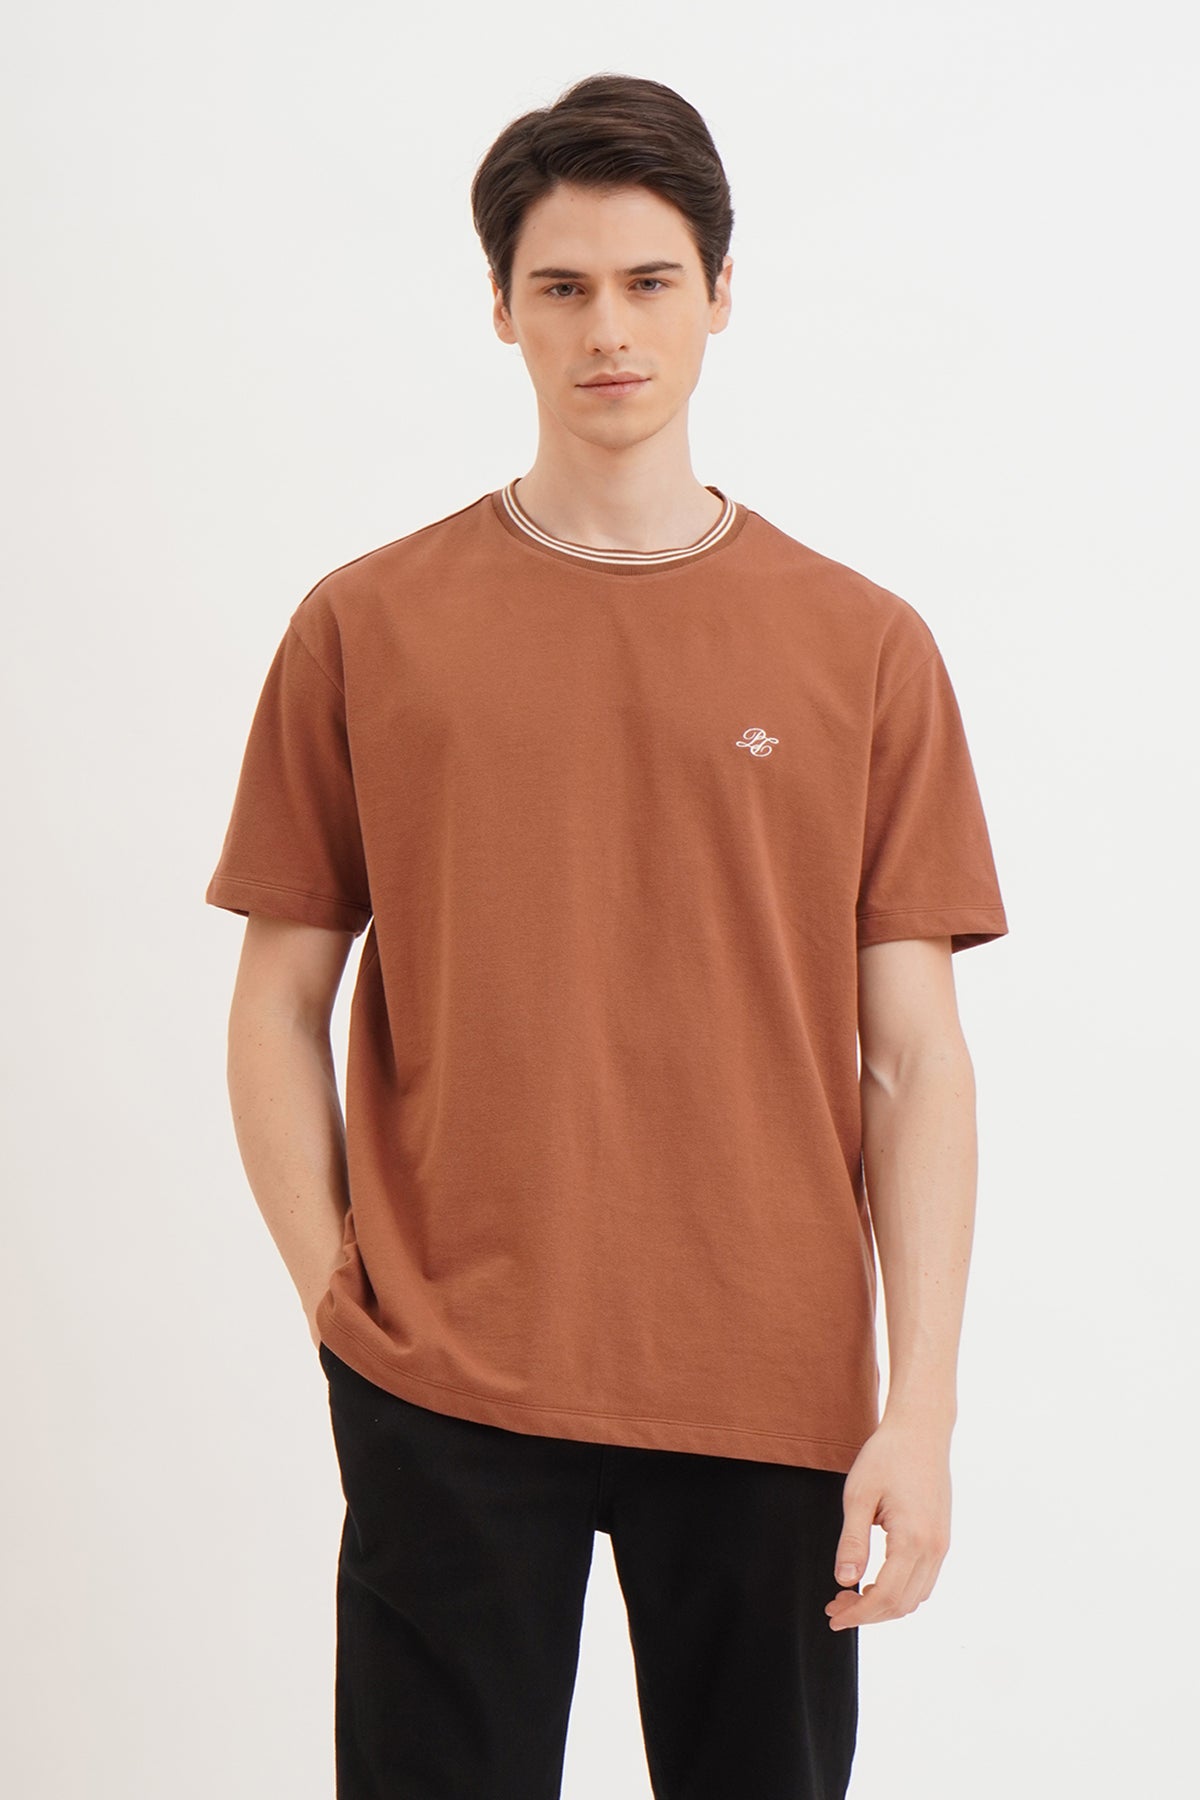 Cap Sleeves Tshirt - Pecan Brown – Bodybrics